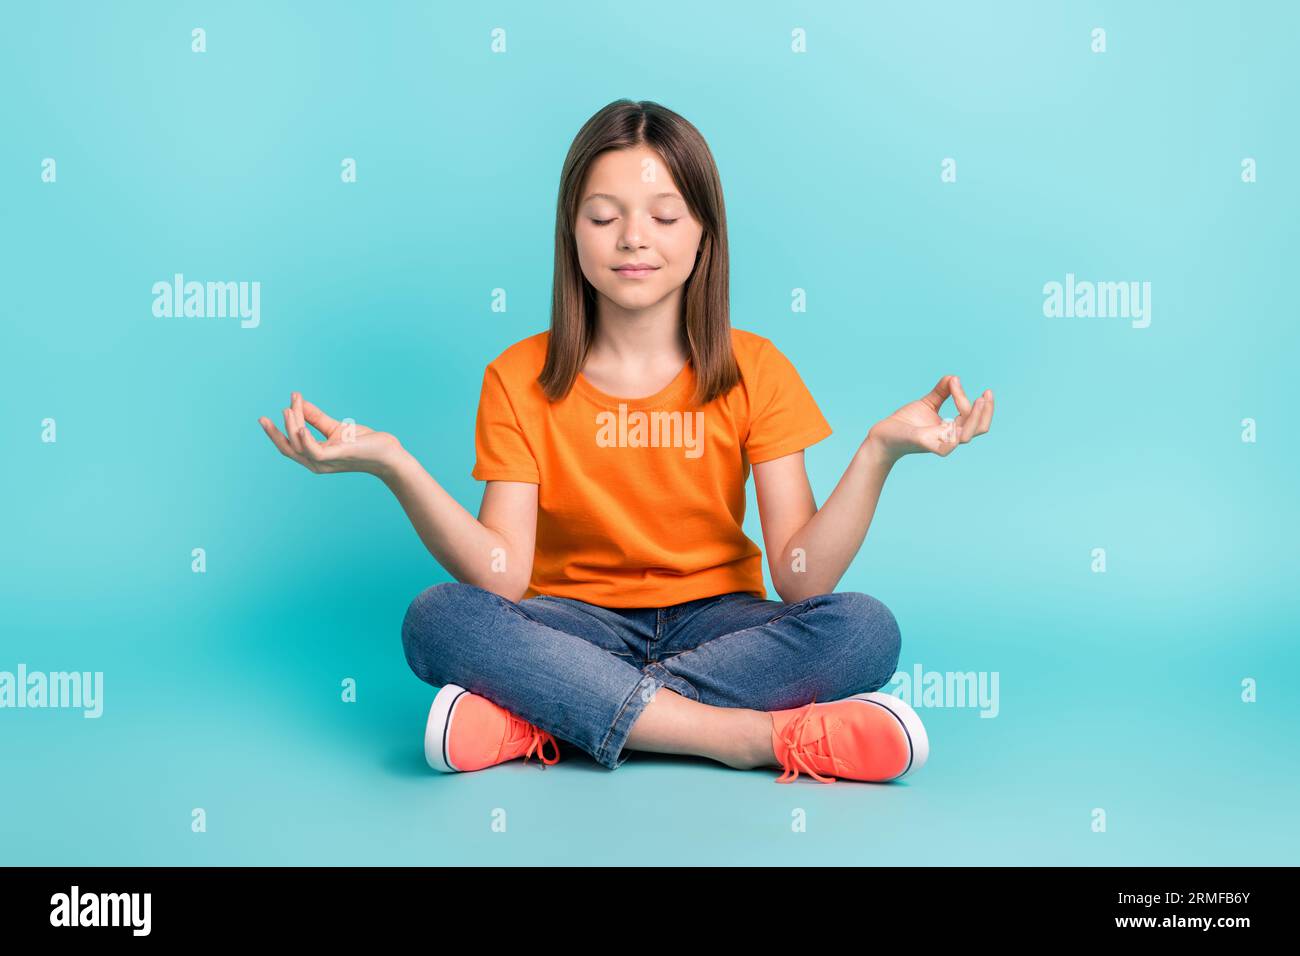 https://c8.alamy.com/compes/2rmfb6y/foto-de-muchacha-enfocada-bonita-vestida-ropa-naranja-elegante-sentada-meditacion-de-yoga-en-el-piso-aislado-en-fondo-de-color-cian-2rmfb6y.jpg